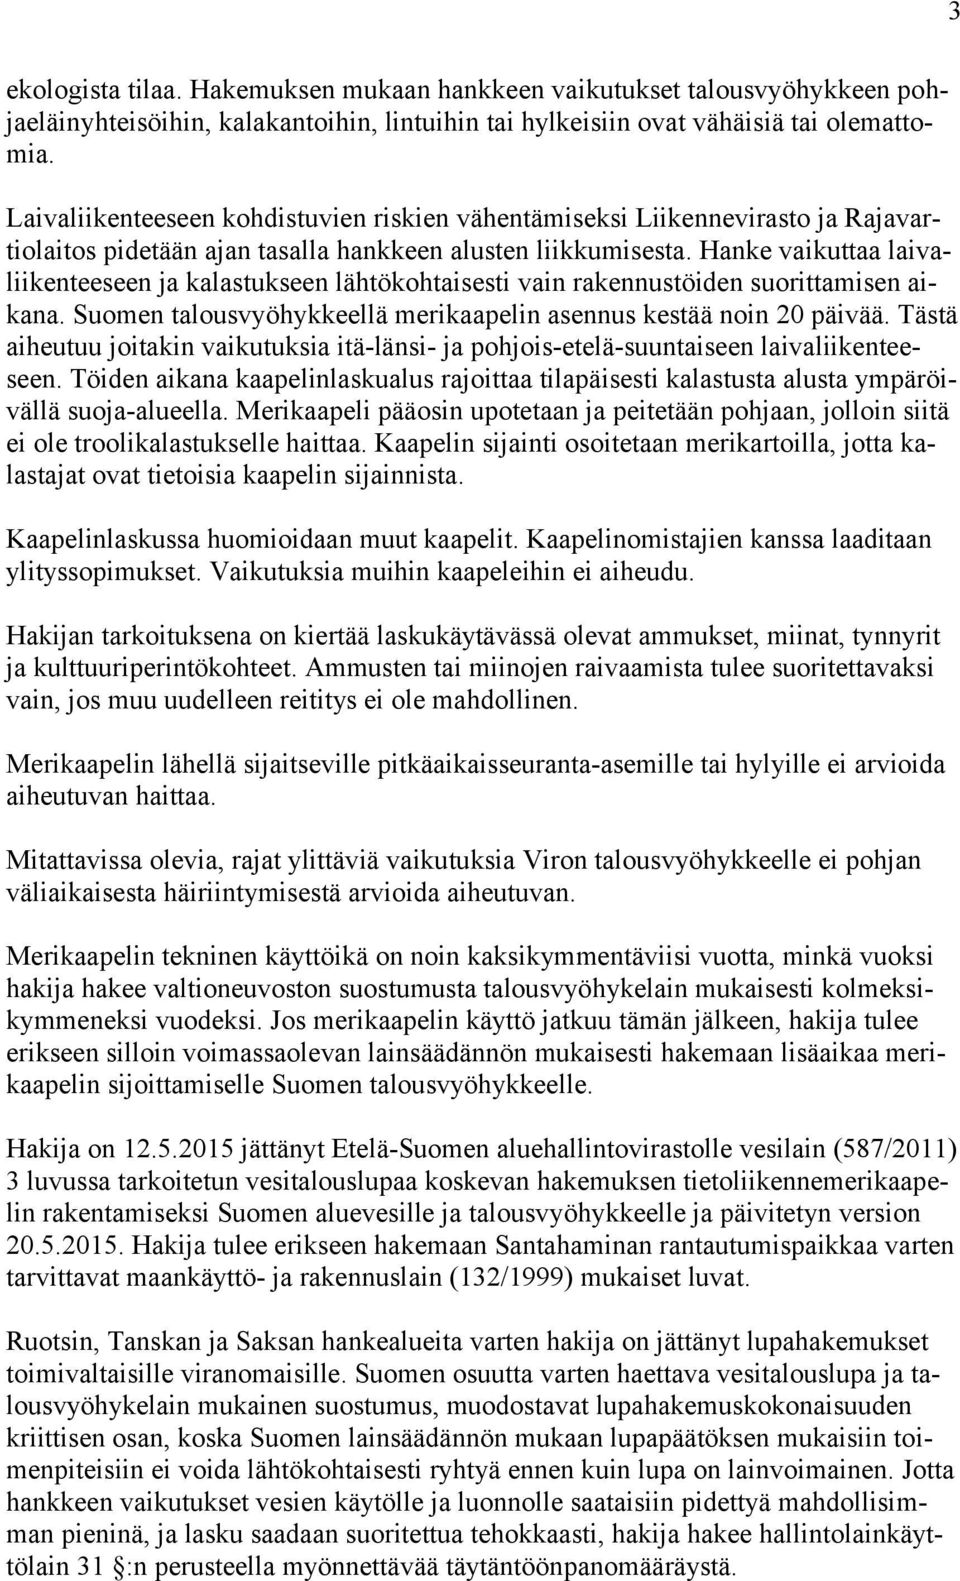 Hanke vaikuttaa laivaliikenteeseen ja kalastukseen lähtökohtaisesti vain rakennustöiden suorittamisen aikana. Suomen talousvyöhykkeellä merikaapelin asennus kestää noin 20 päivää.